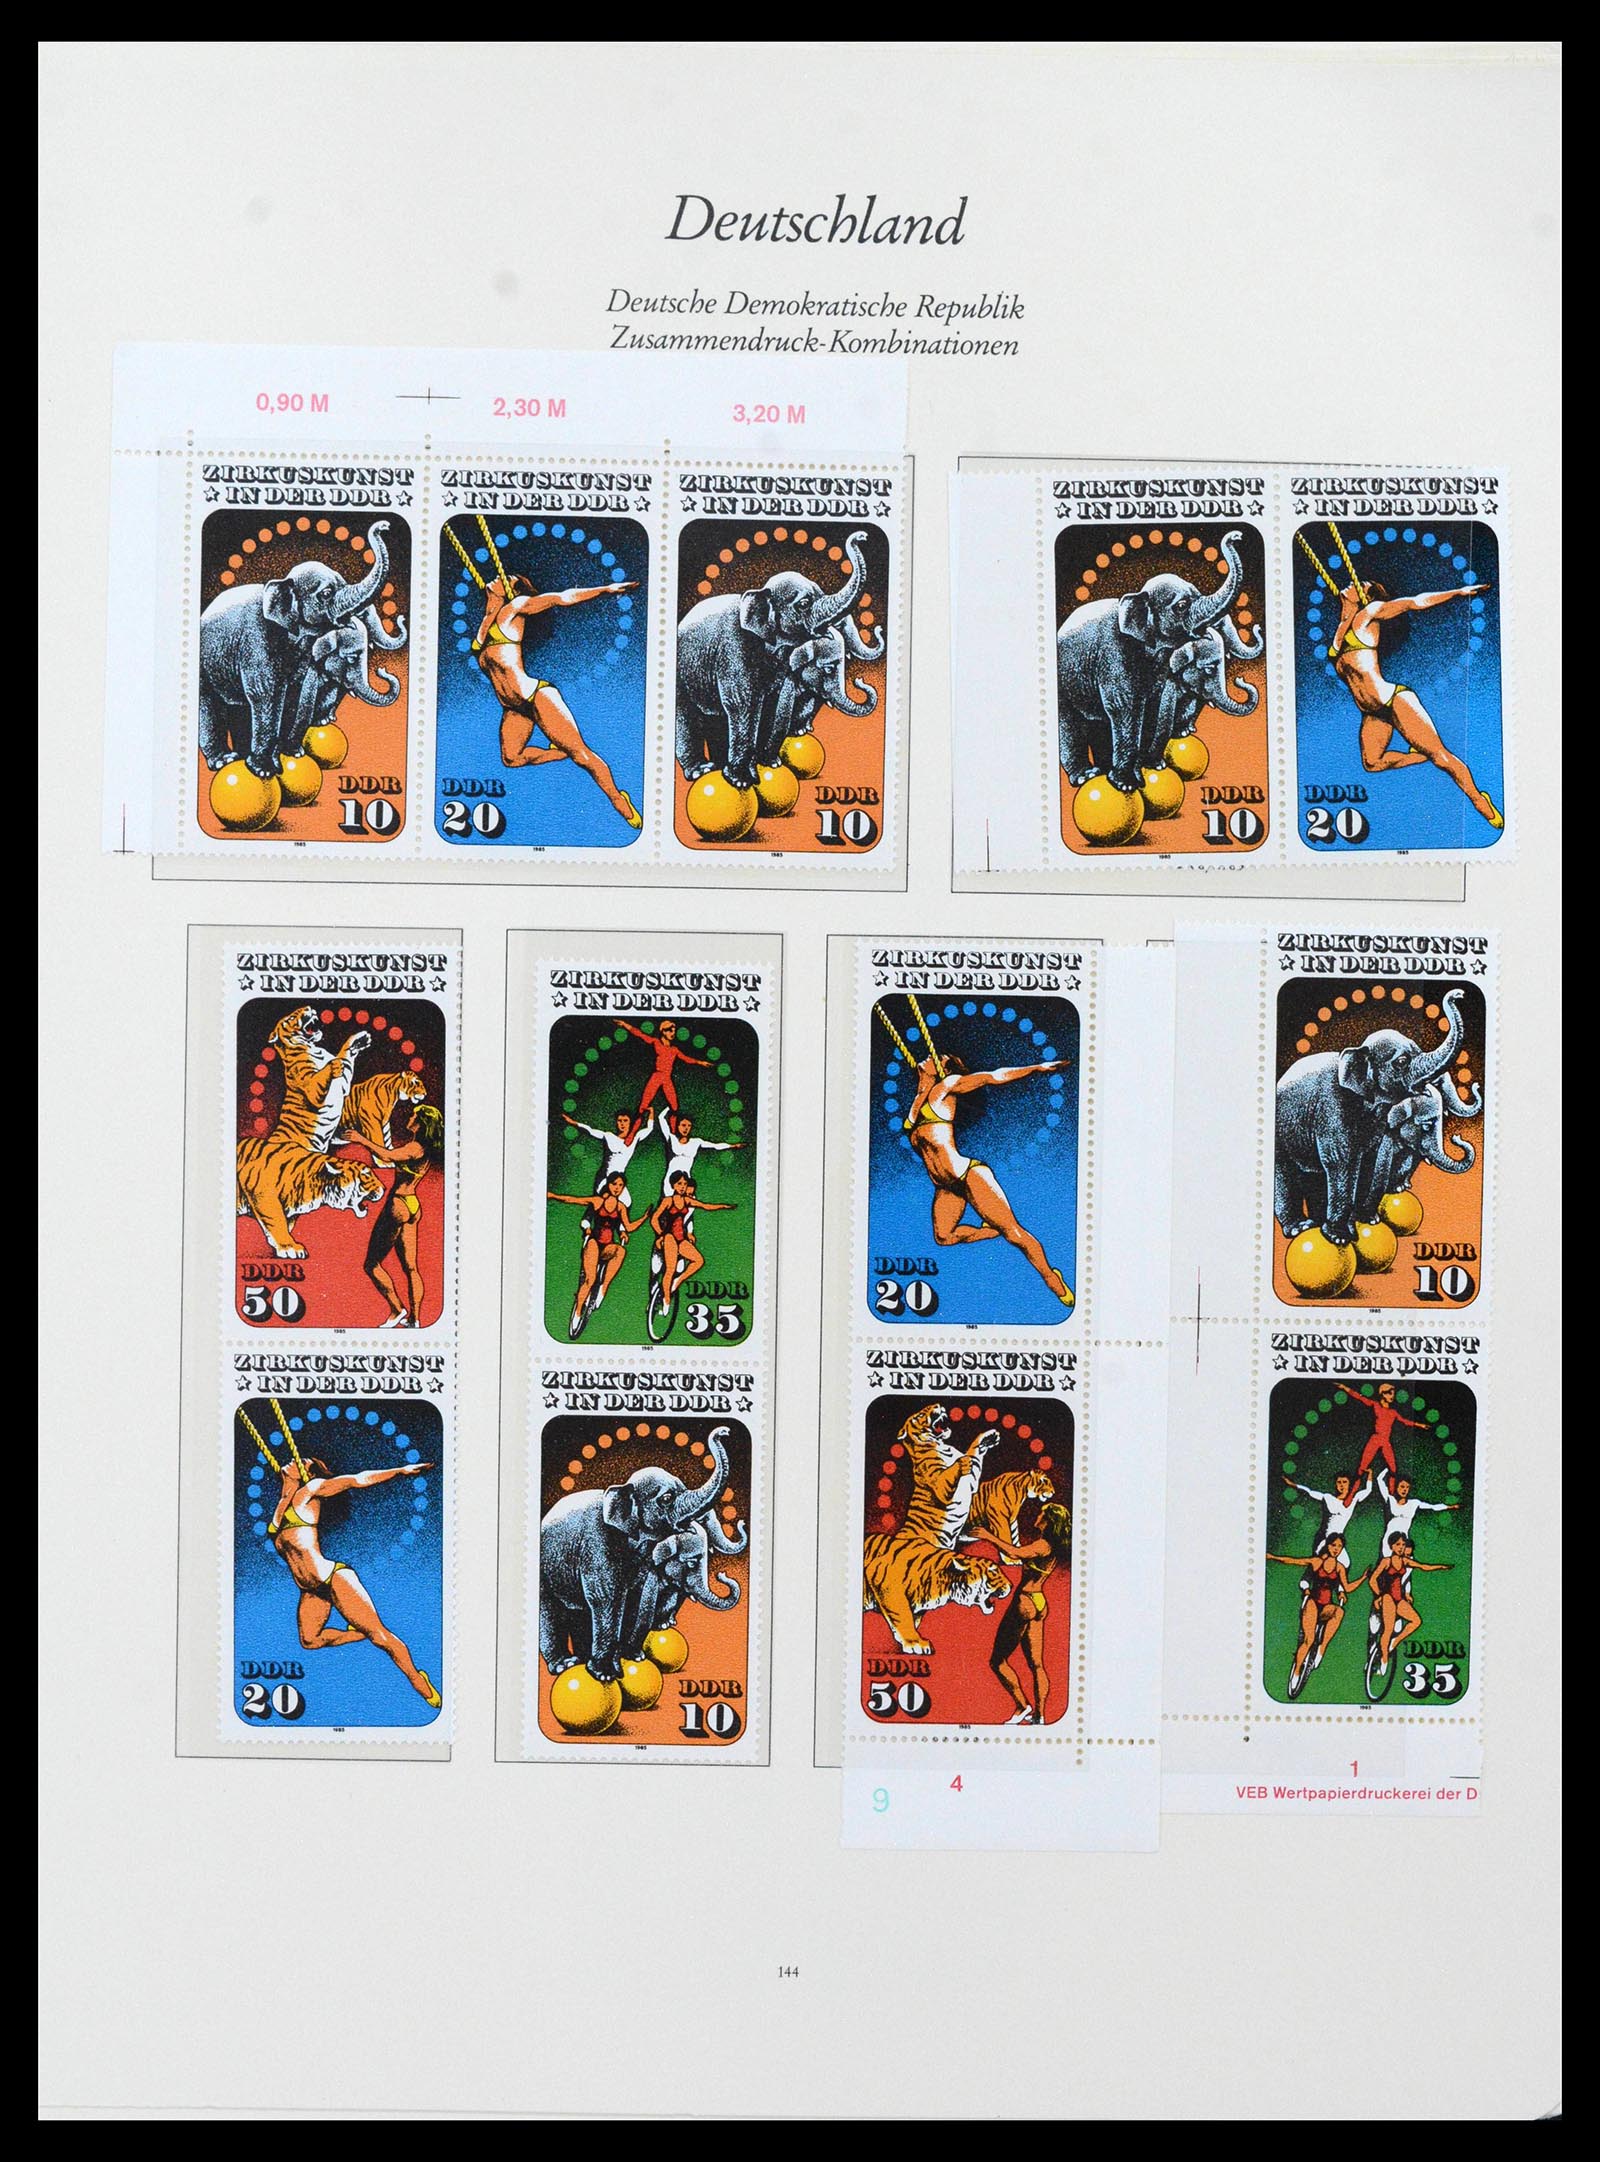 38188 0020 - Postzegelverzameling 38188 DDR combinaties 1955-1990.